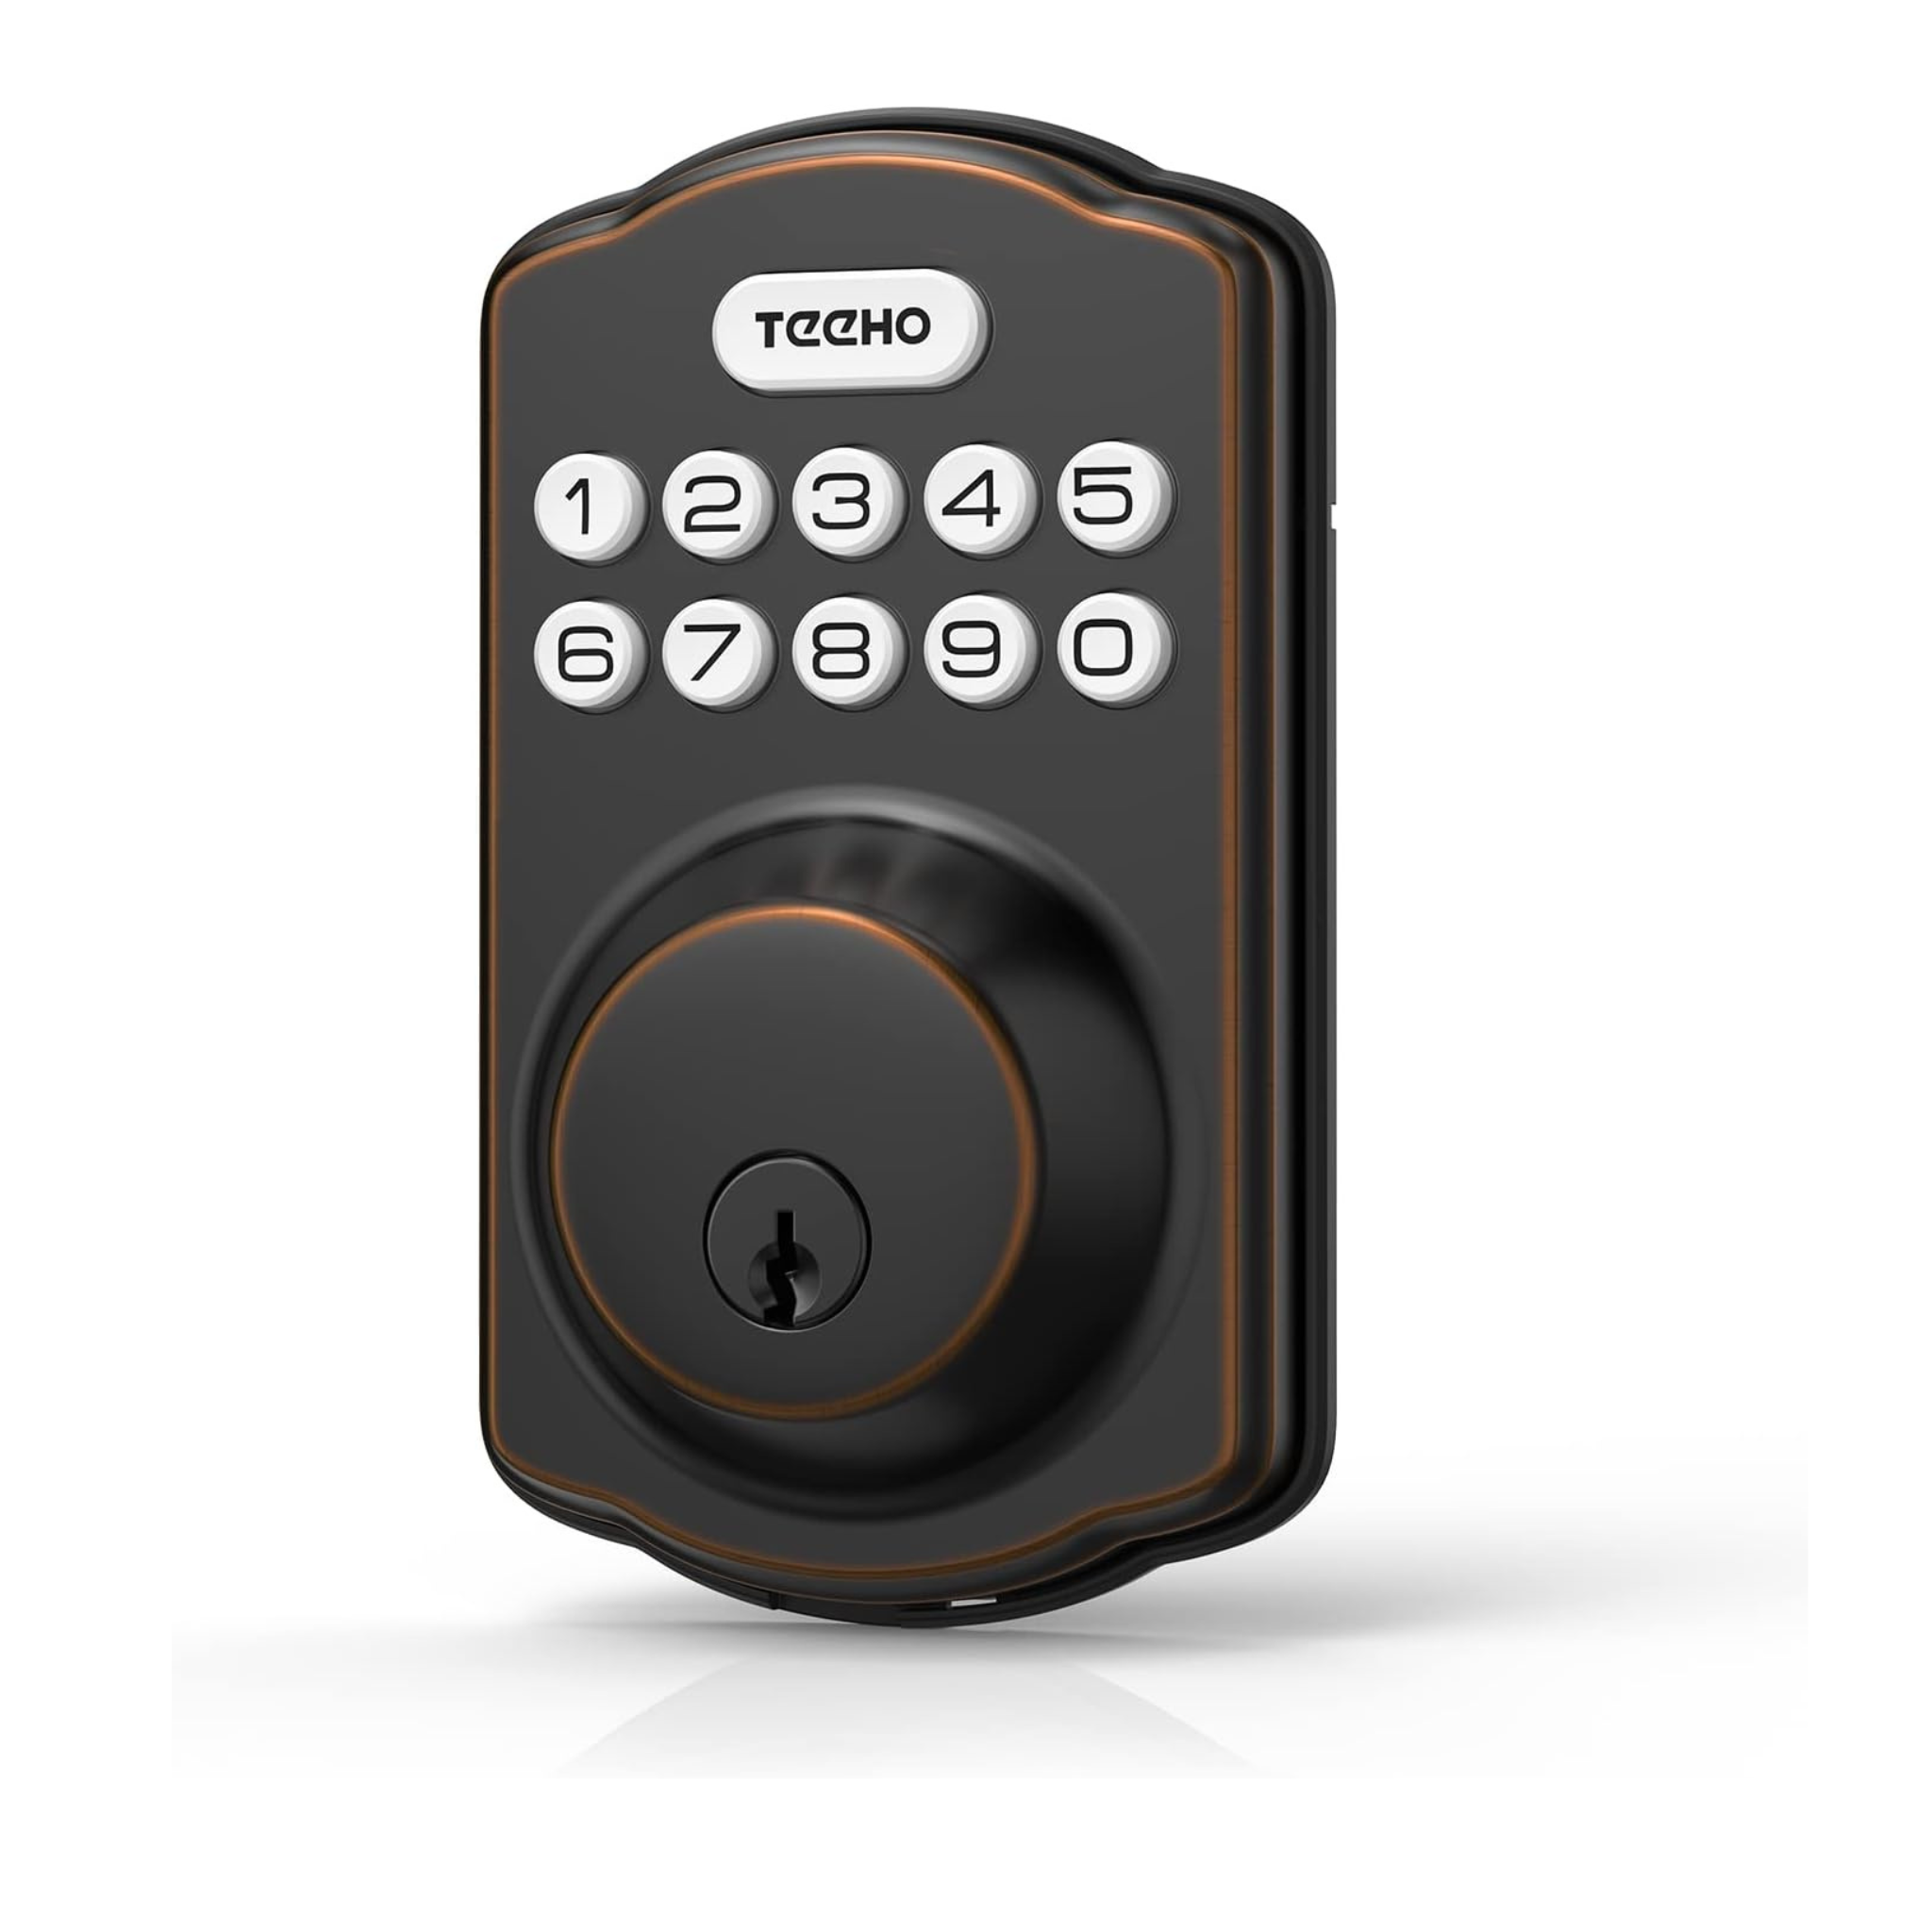 Teeho Keyless Entry Door Lock With Keypad